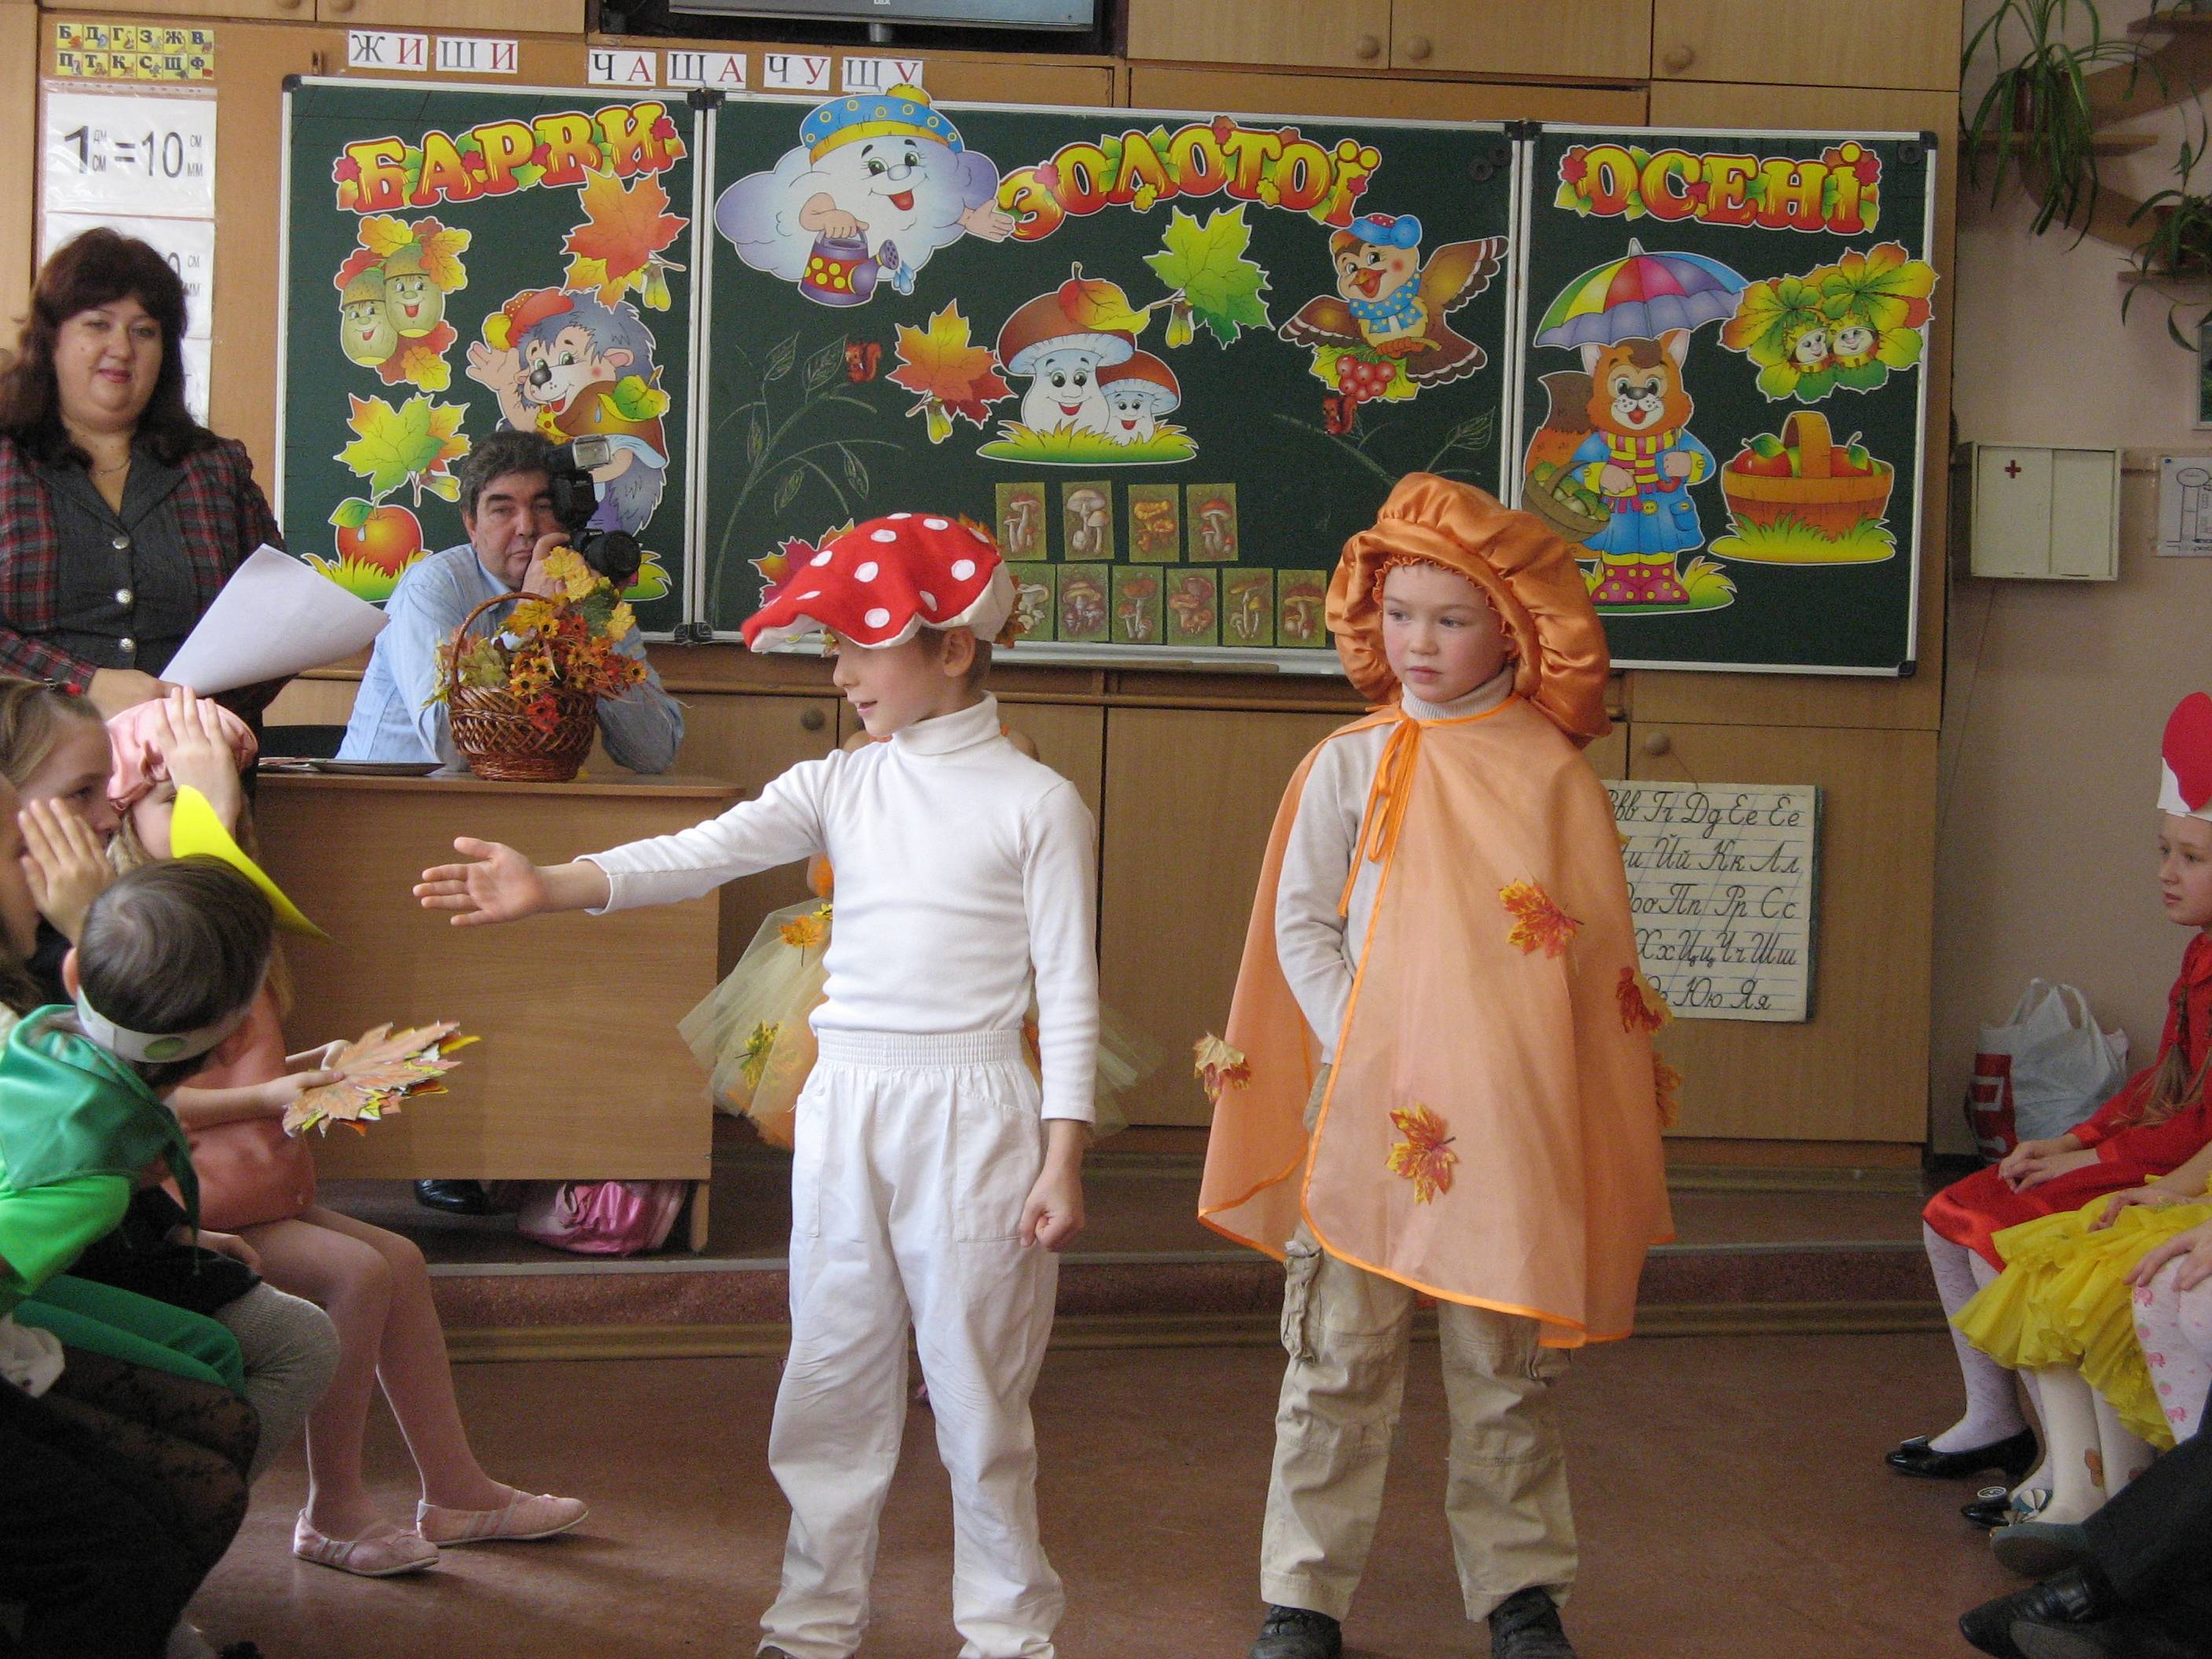 Сценарий осенний бал в детском саду: Сценарий праздника осени в детском саду «Осенний бал» в средней группе «Шие»